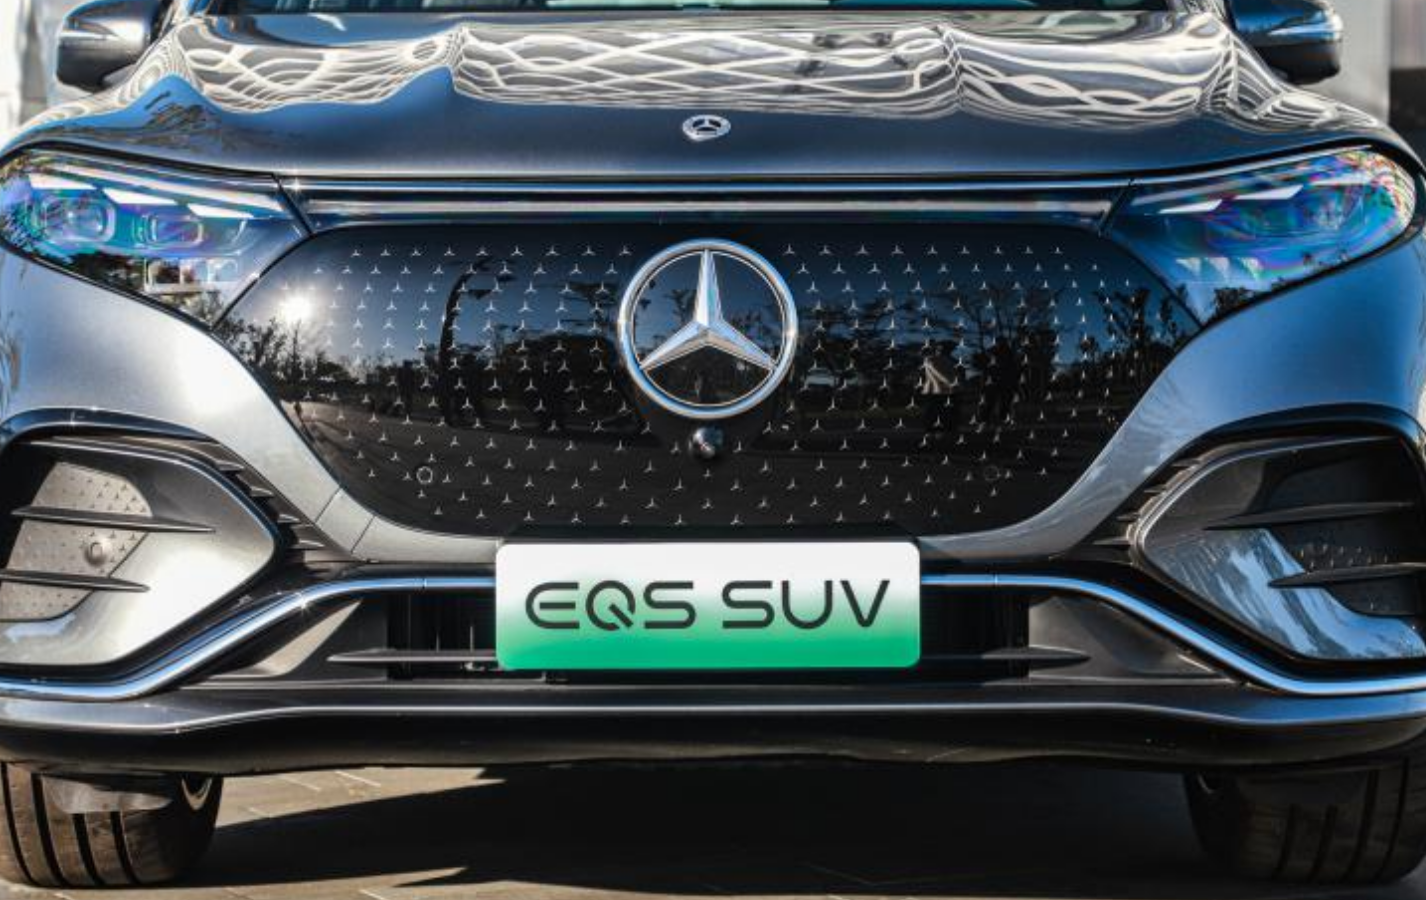 不要小看了EQS SUV前脸的暗夜星徽封闭式格栅，其表明含有无数个三维立体星徽图案组成的暗夜星阵，整体视觉效果科技感十足。